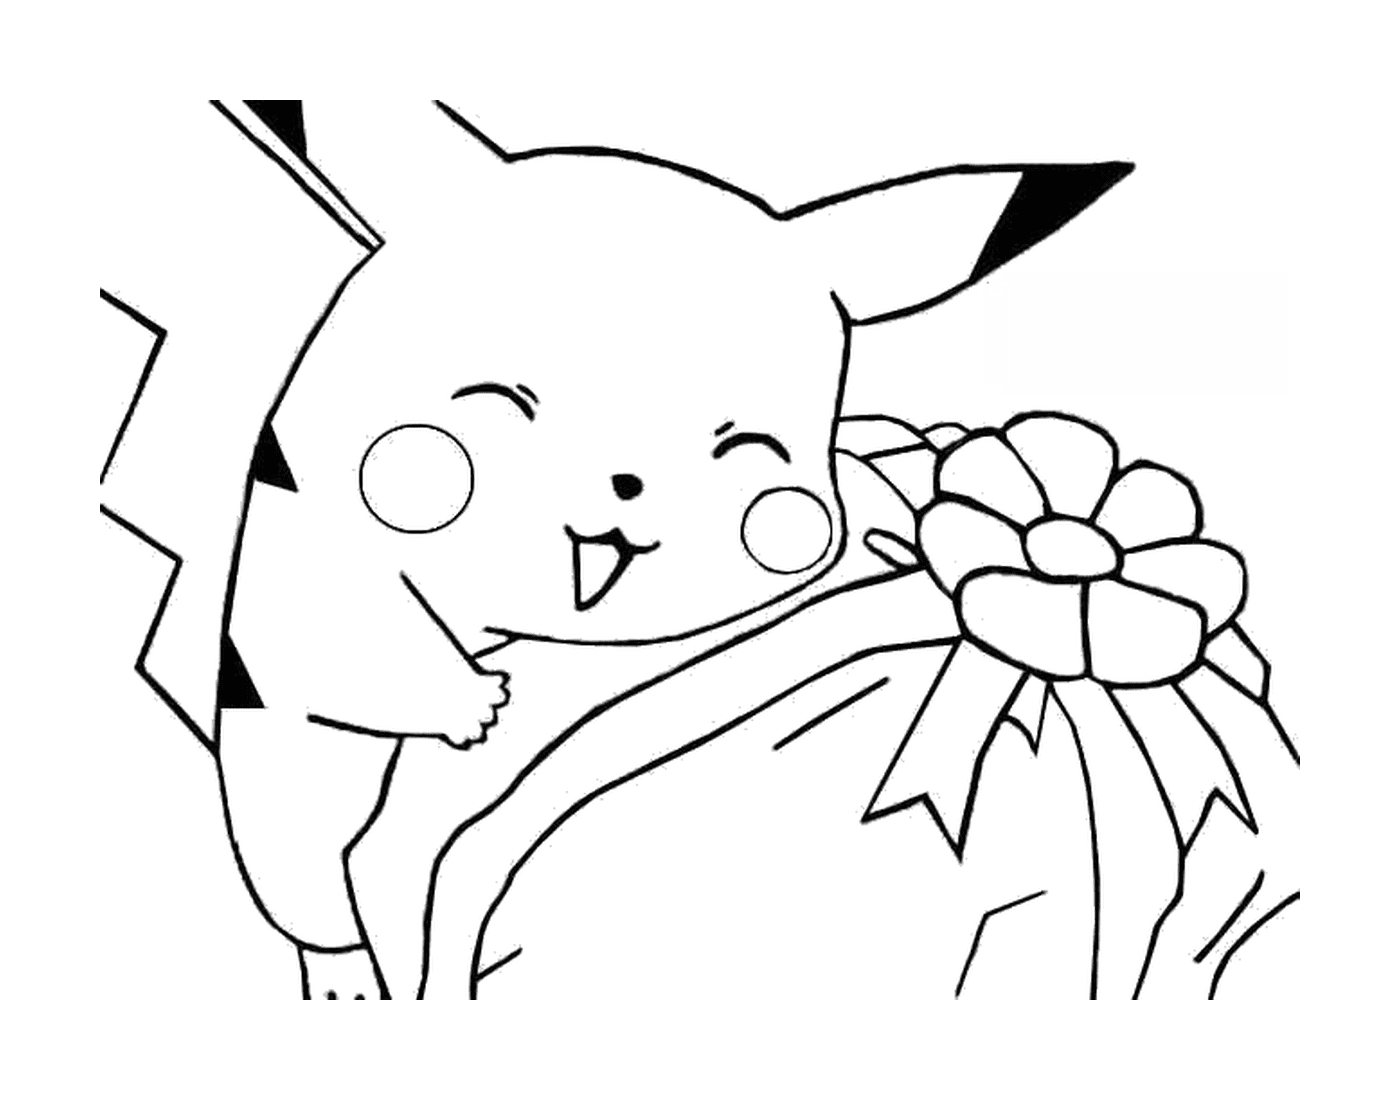  Pikachu oferece um presente 